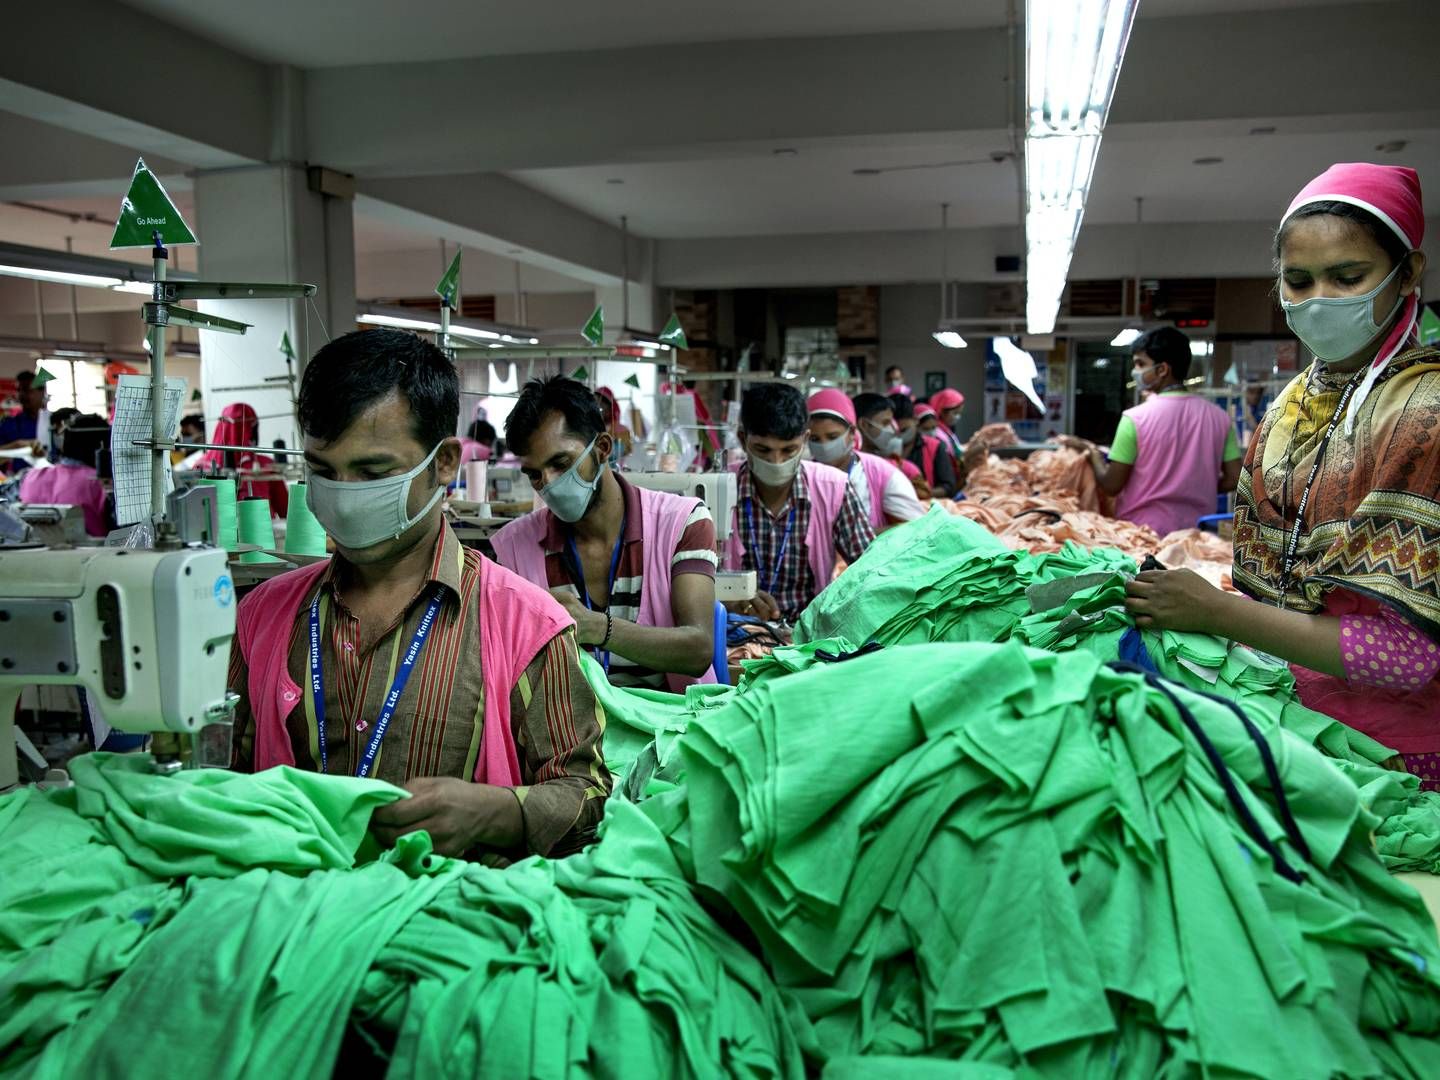 Underleverandører som fx tekstil- og tøjfabrikker i Asien bør indgå bedre i opgørelsen af danske virksomheders klimaaftryk ifølge Klimarådet. | Foto: Jacob Ehrbahn/Politiken